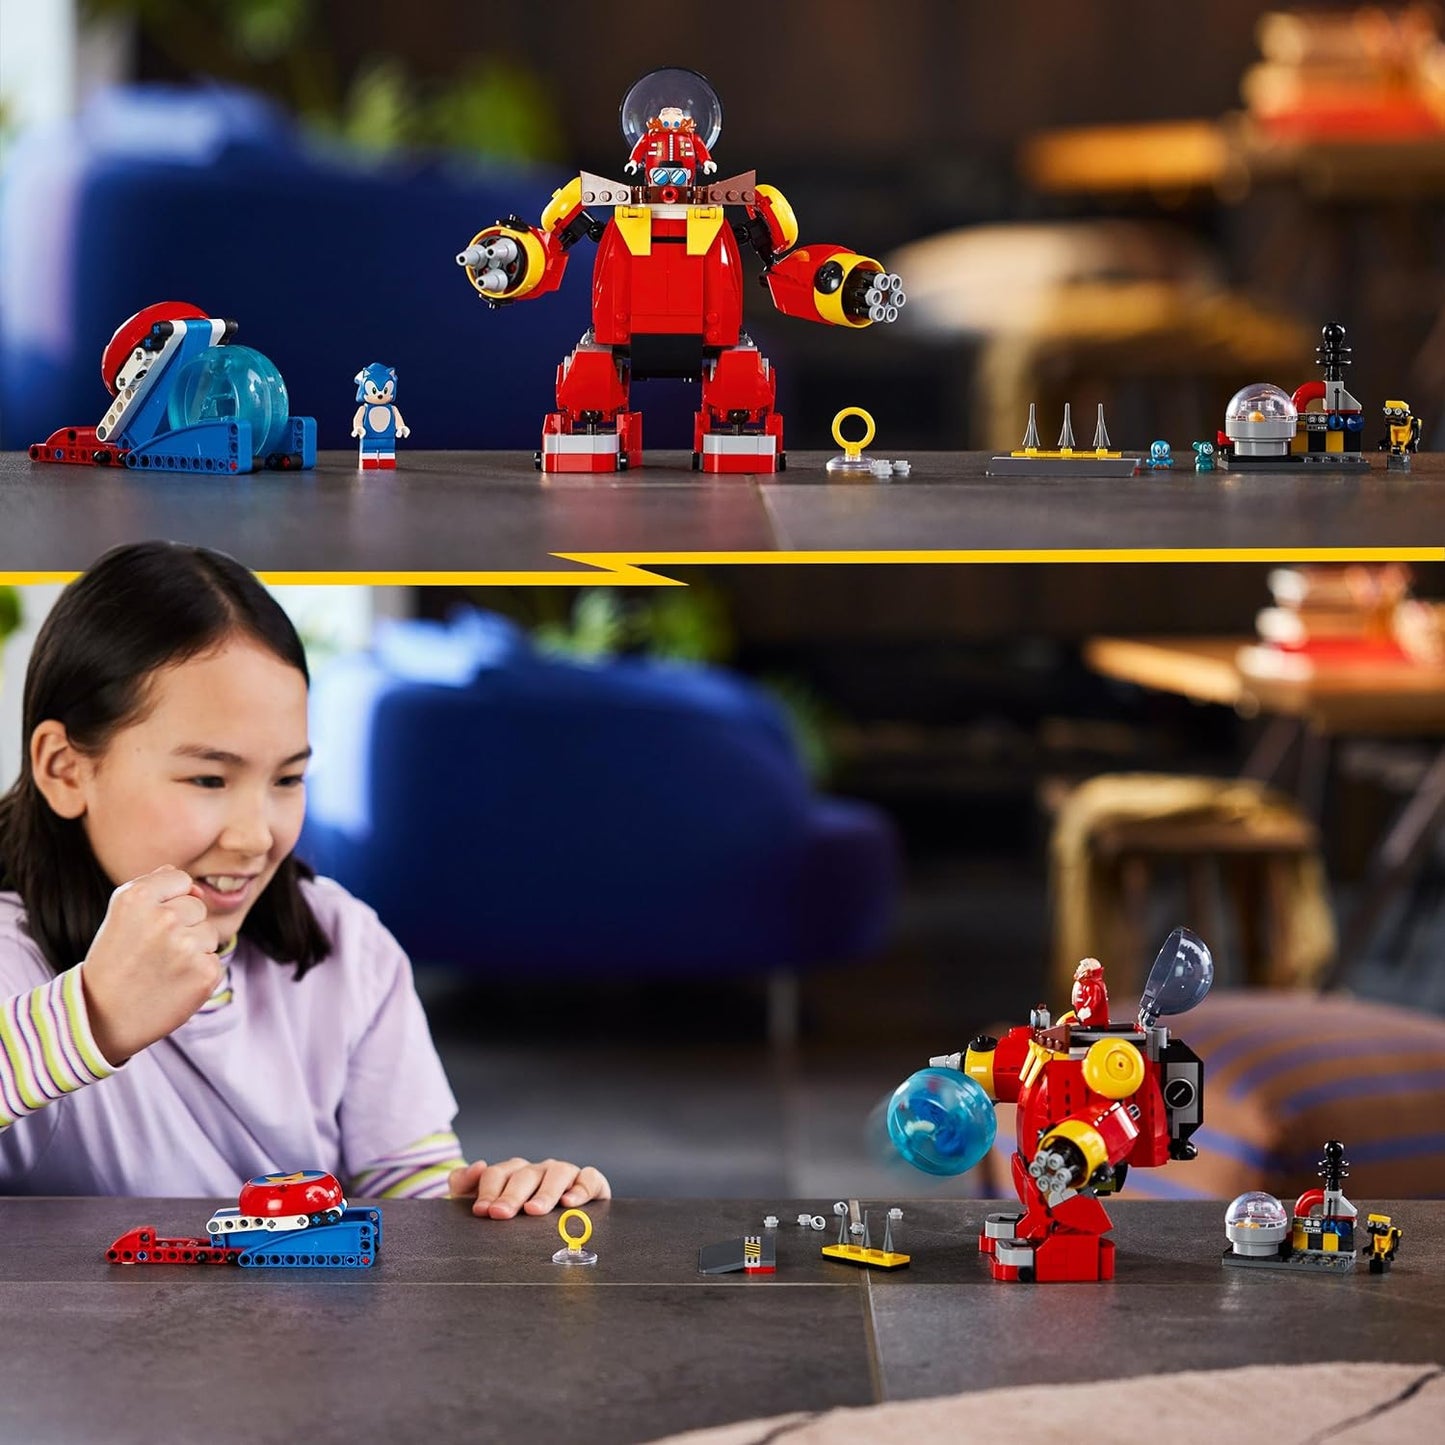 LEGO 76993 Sonic vs. Dr. Eggmans Death Egg Robot, 6 Charaktere und Zubehör